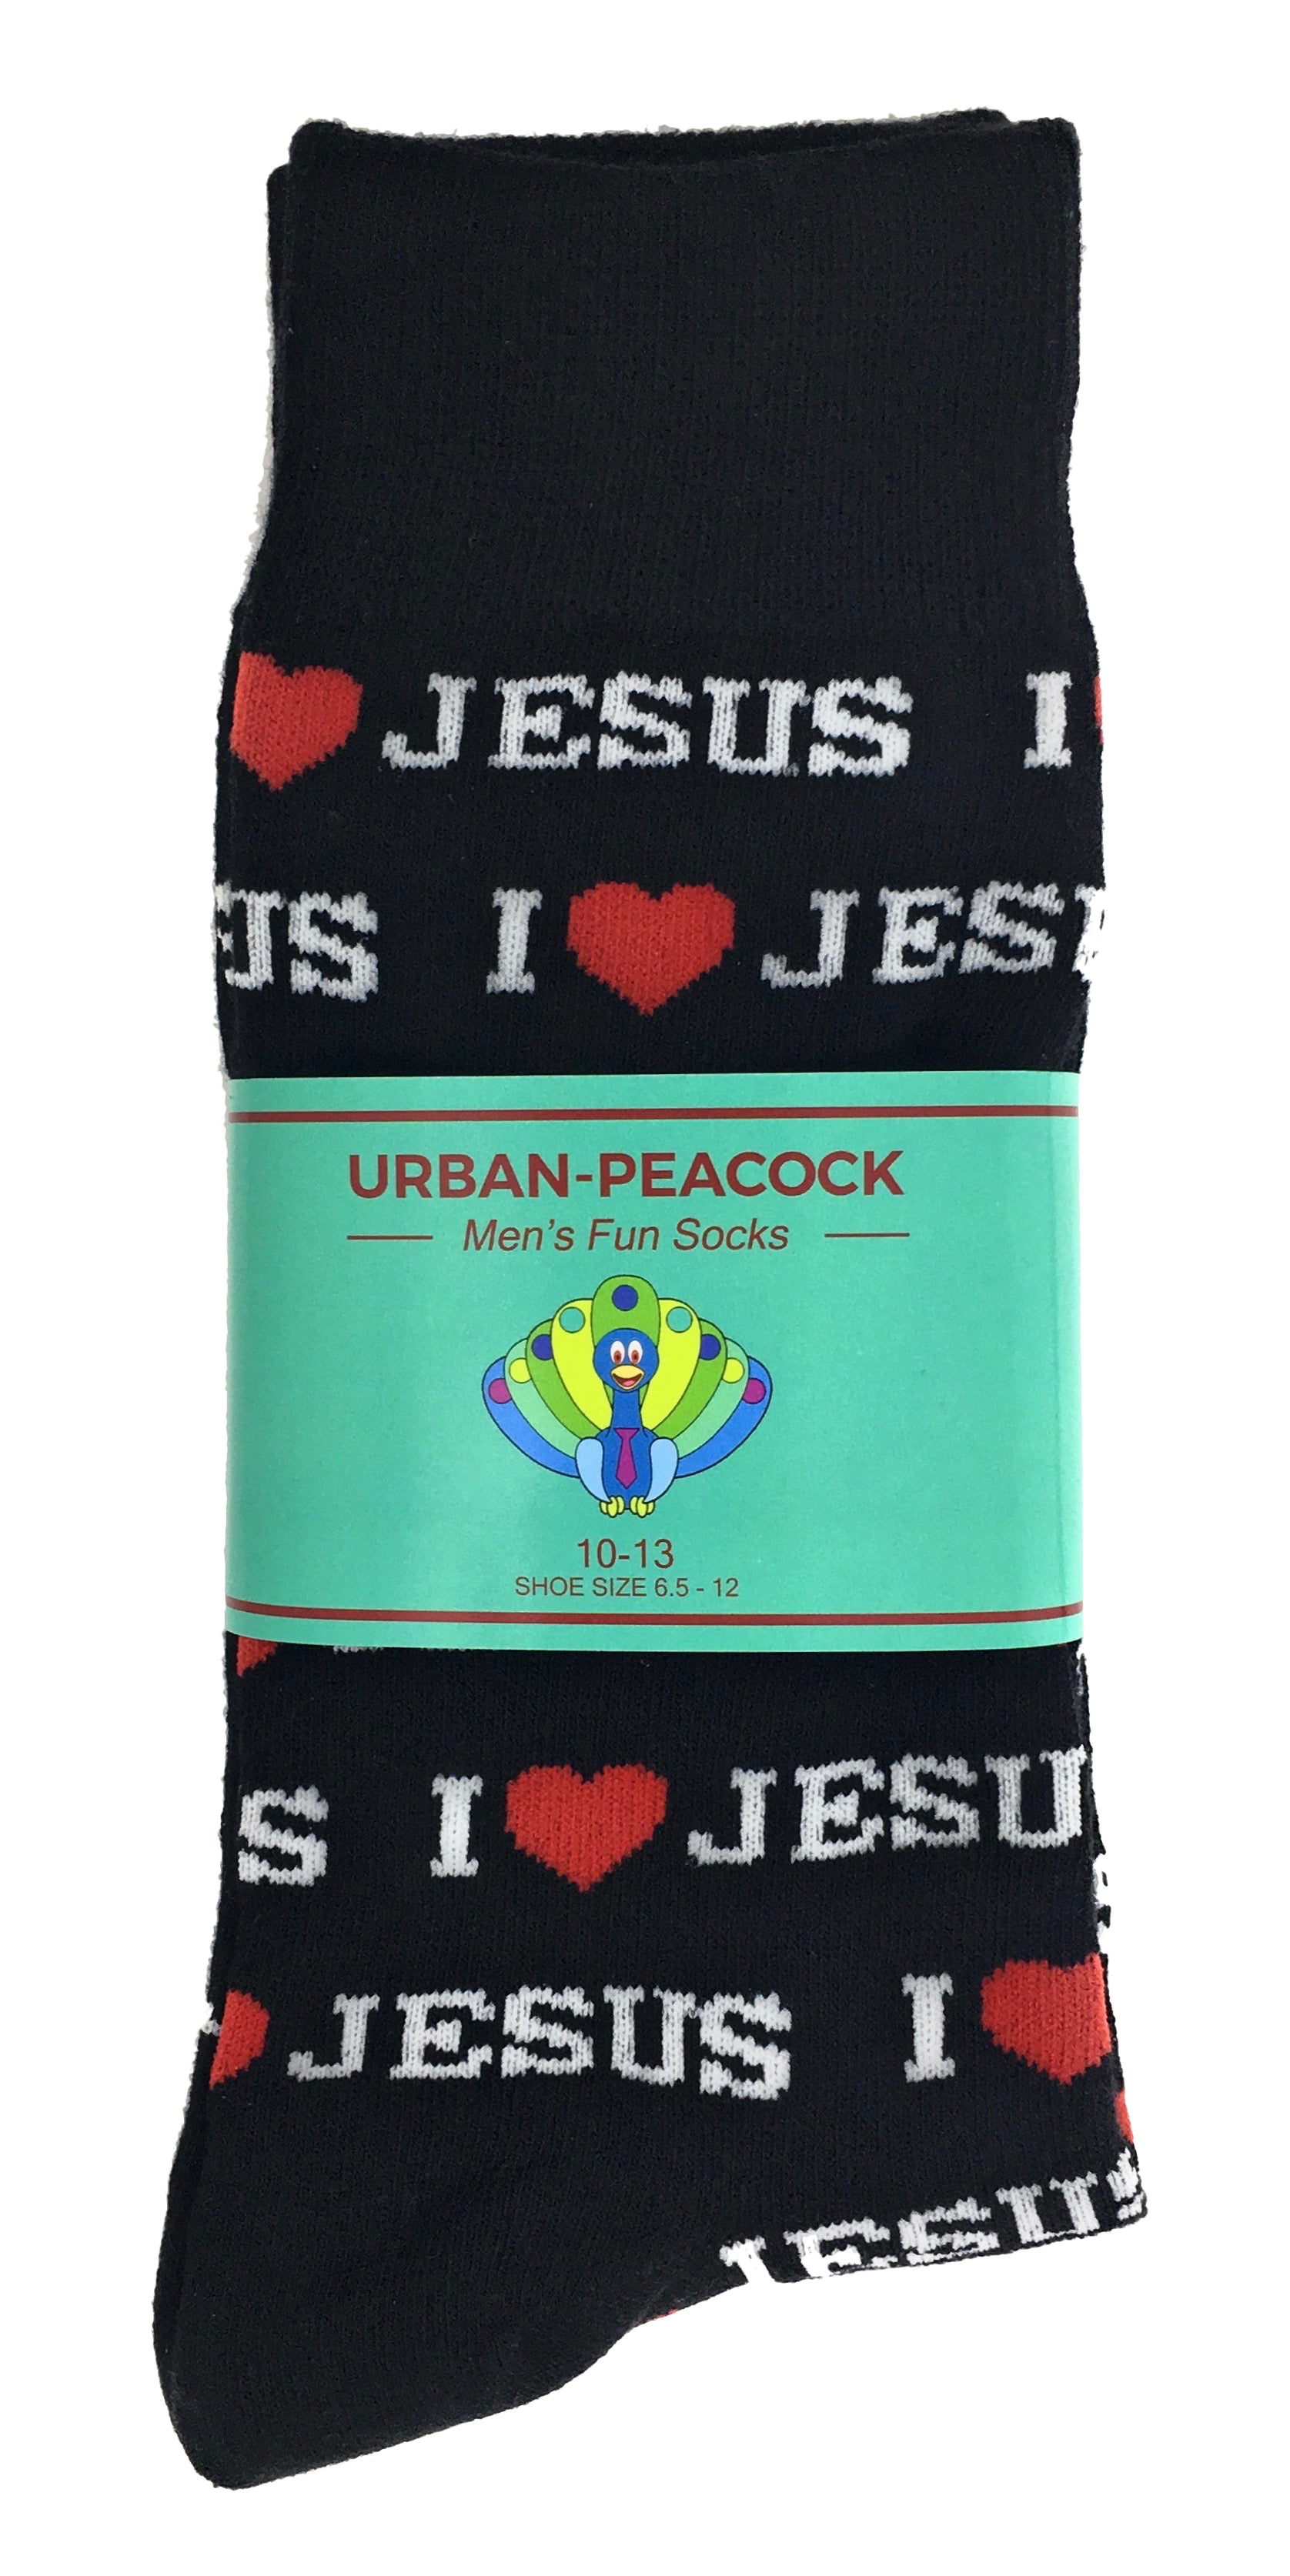 Urban-Peacock Men's Novelty Crew Socks - I Love Jesus - Black